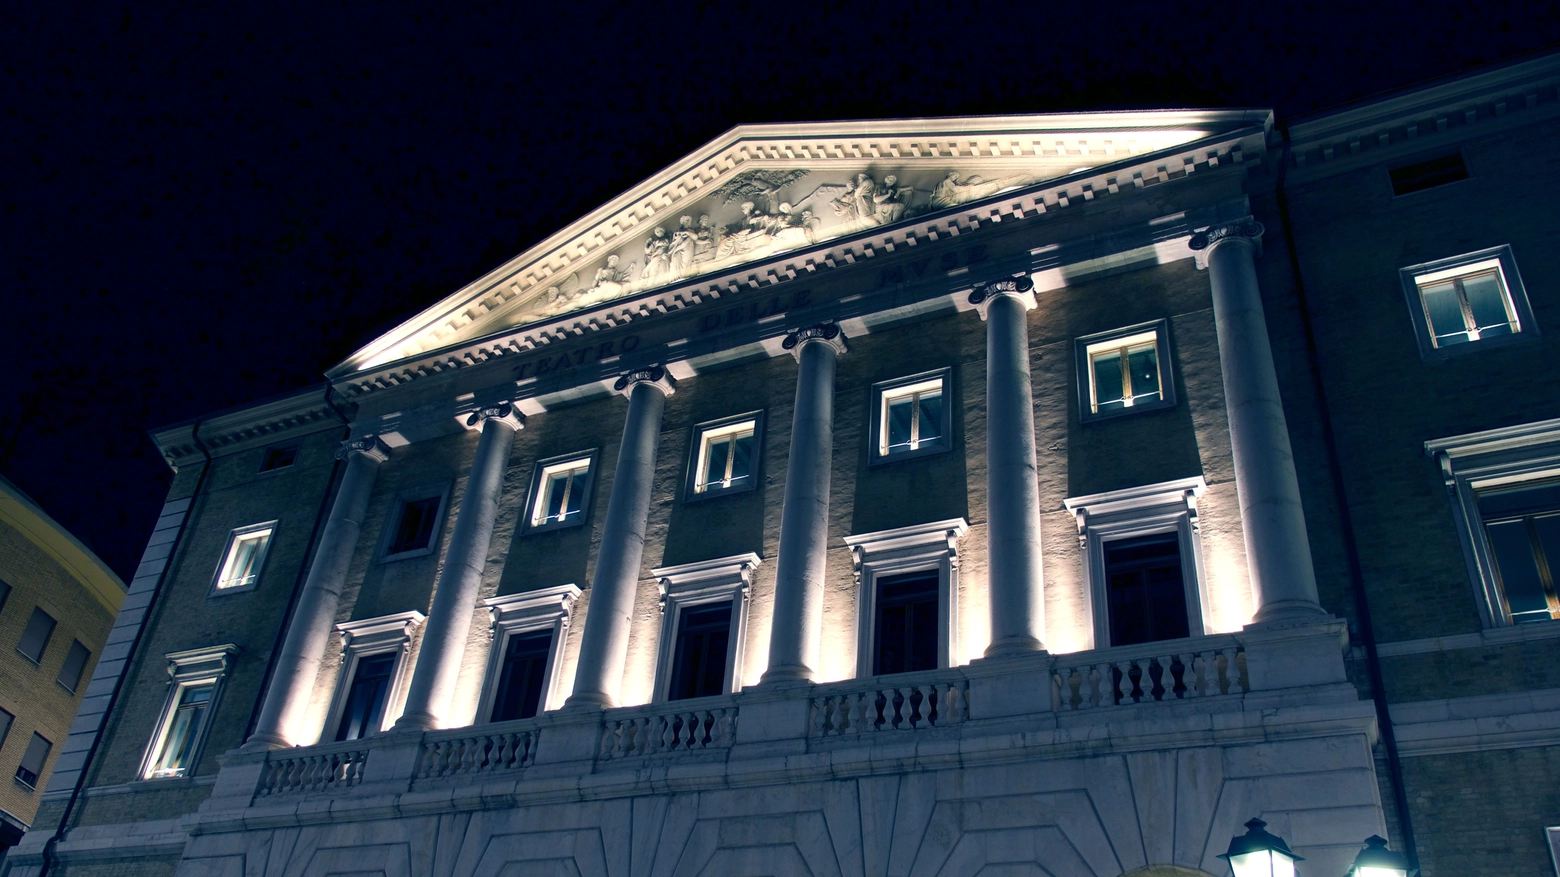 Il teatro delle Muse di Ancona illuminato per #facciamolucesulteatro